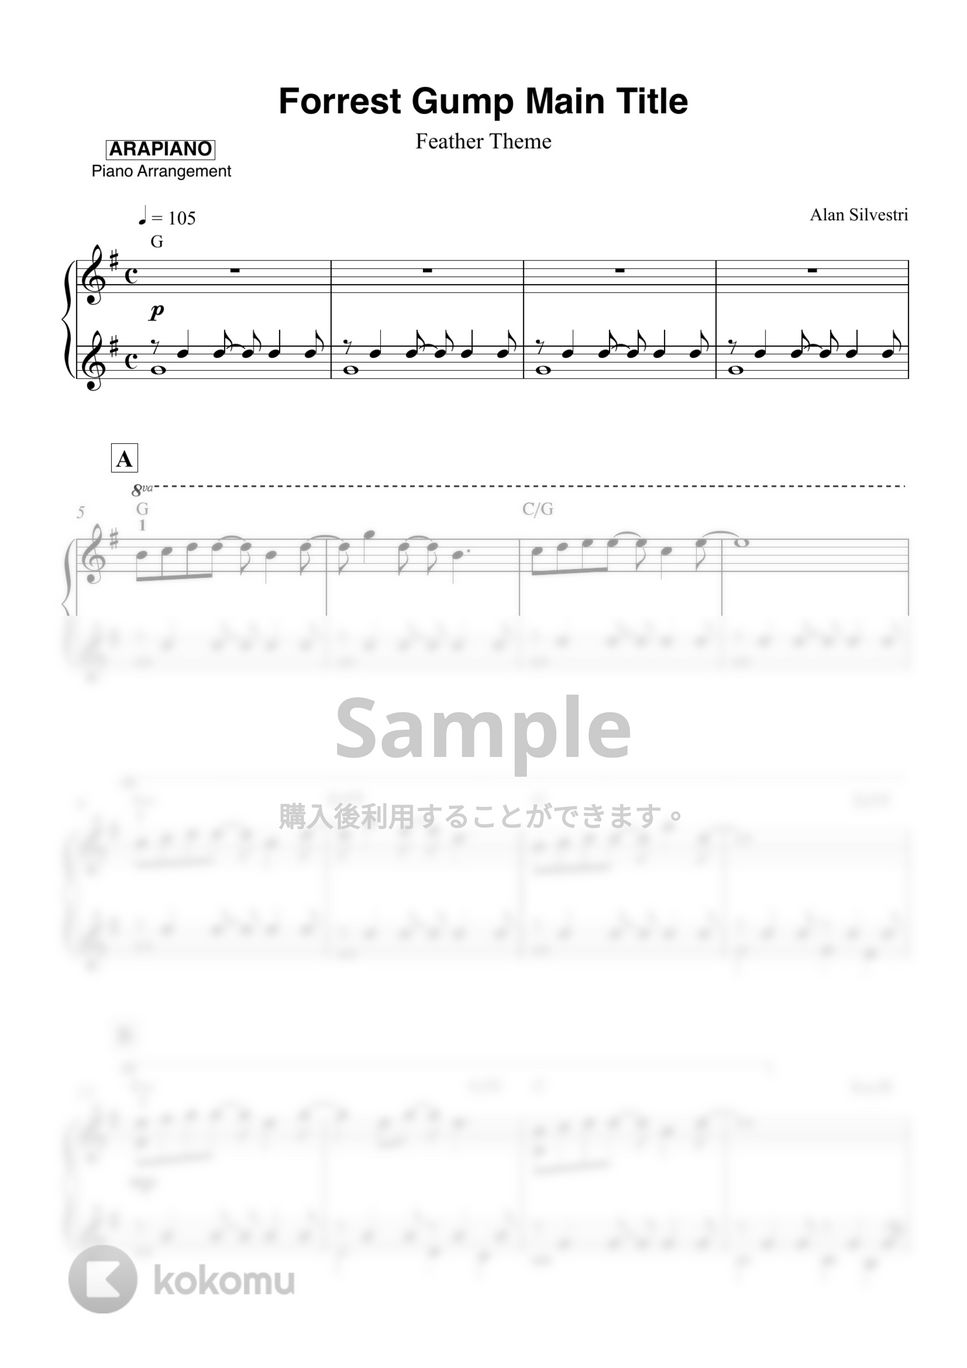 フォレスト・ガンプ - Forrest Gump Main Title by ARAPIANO